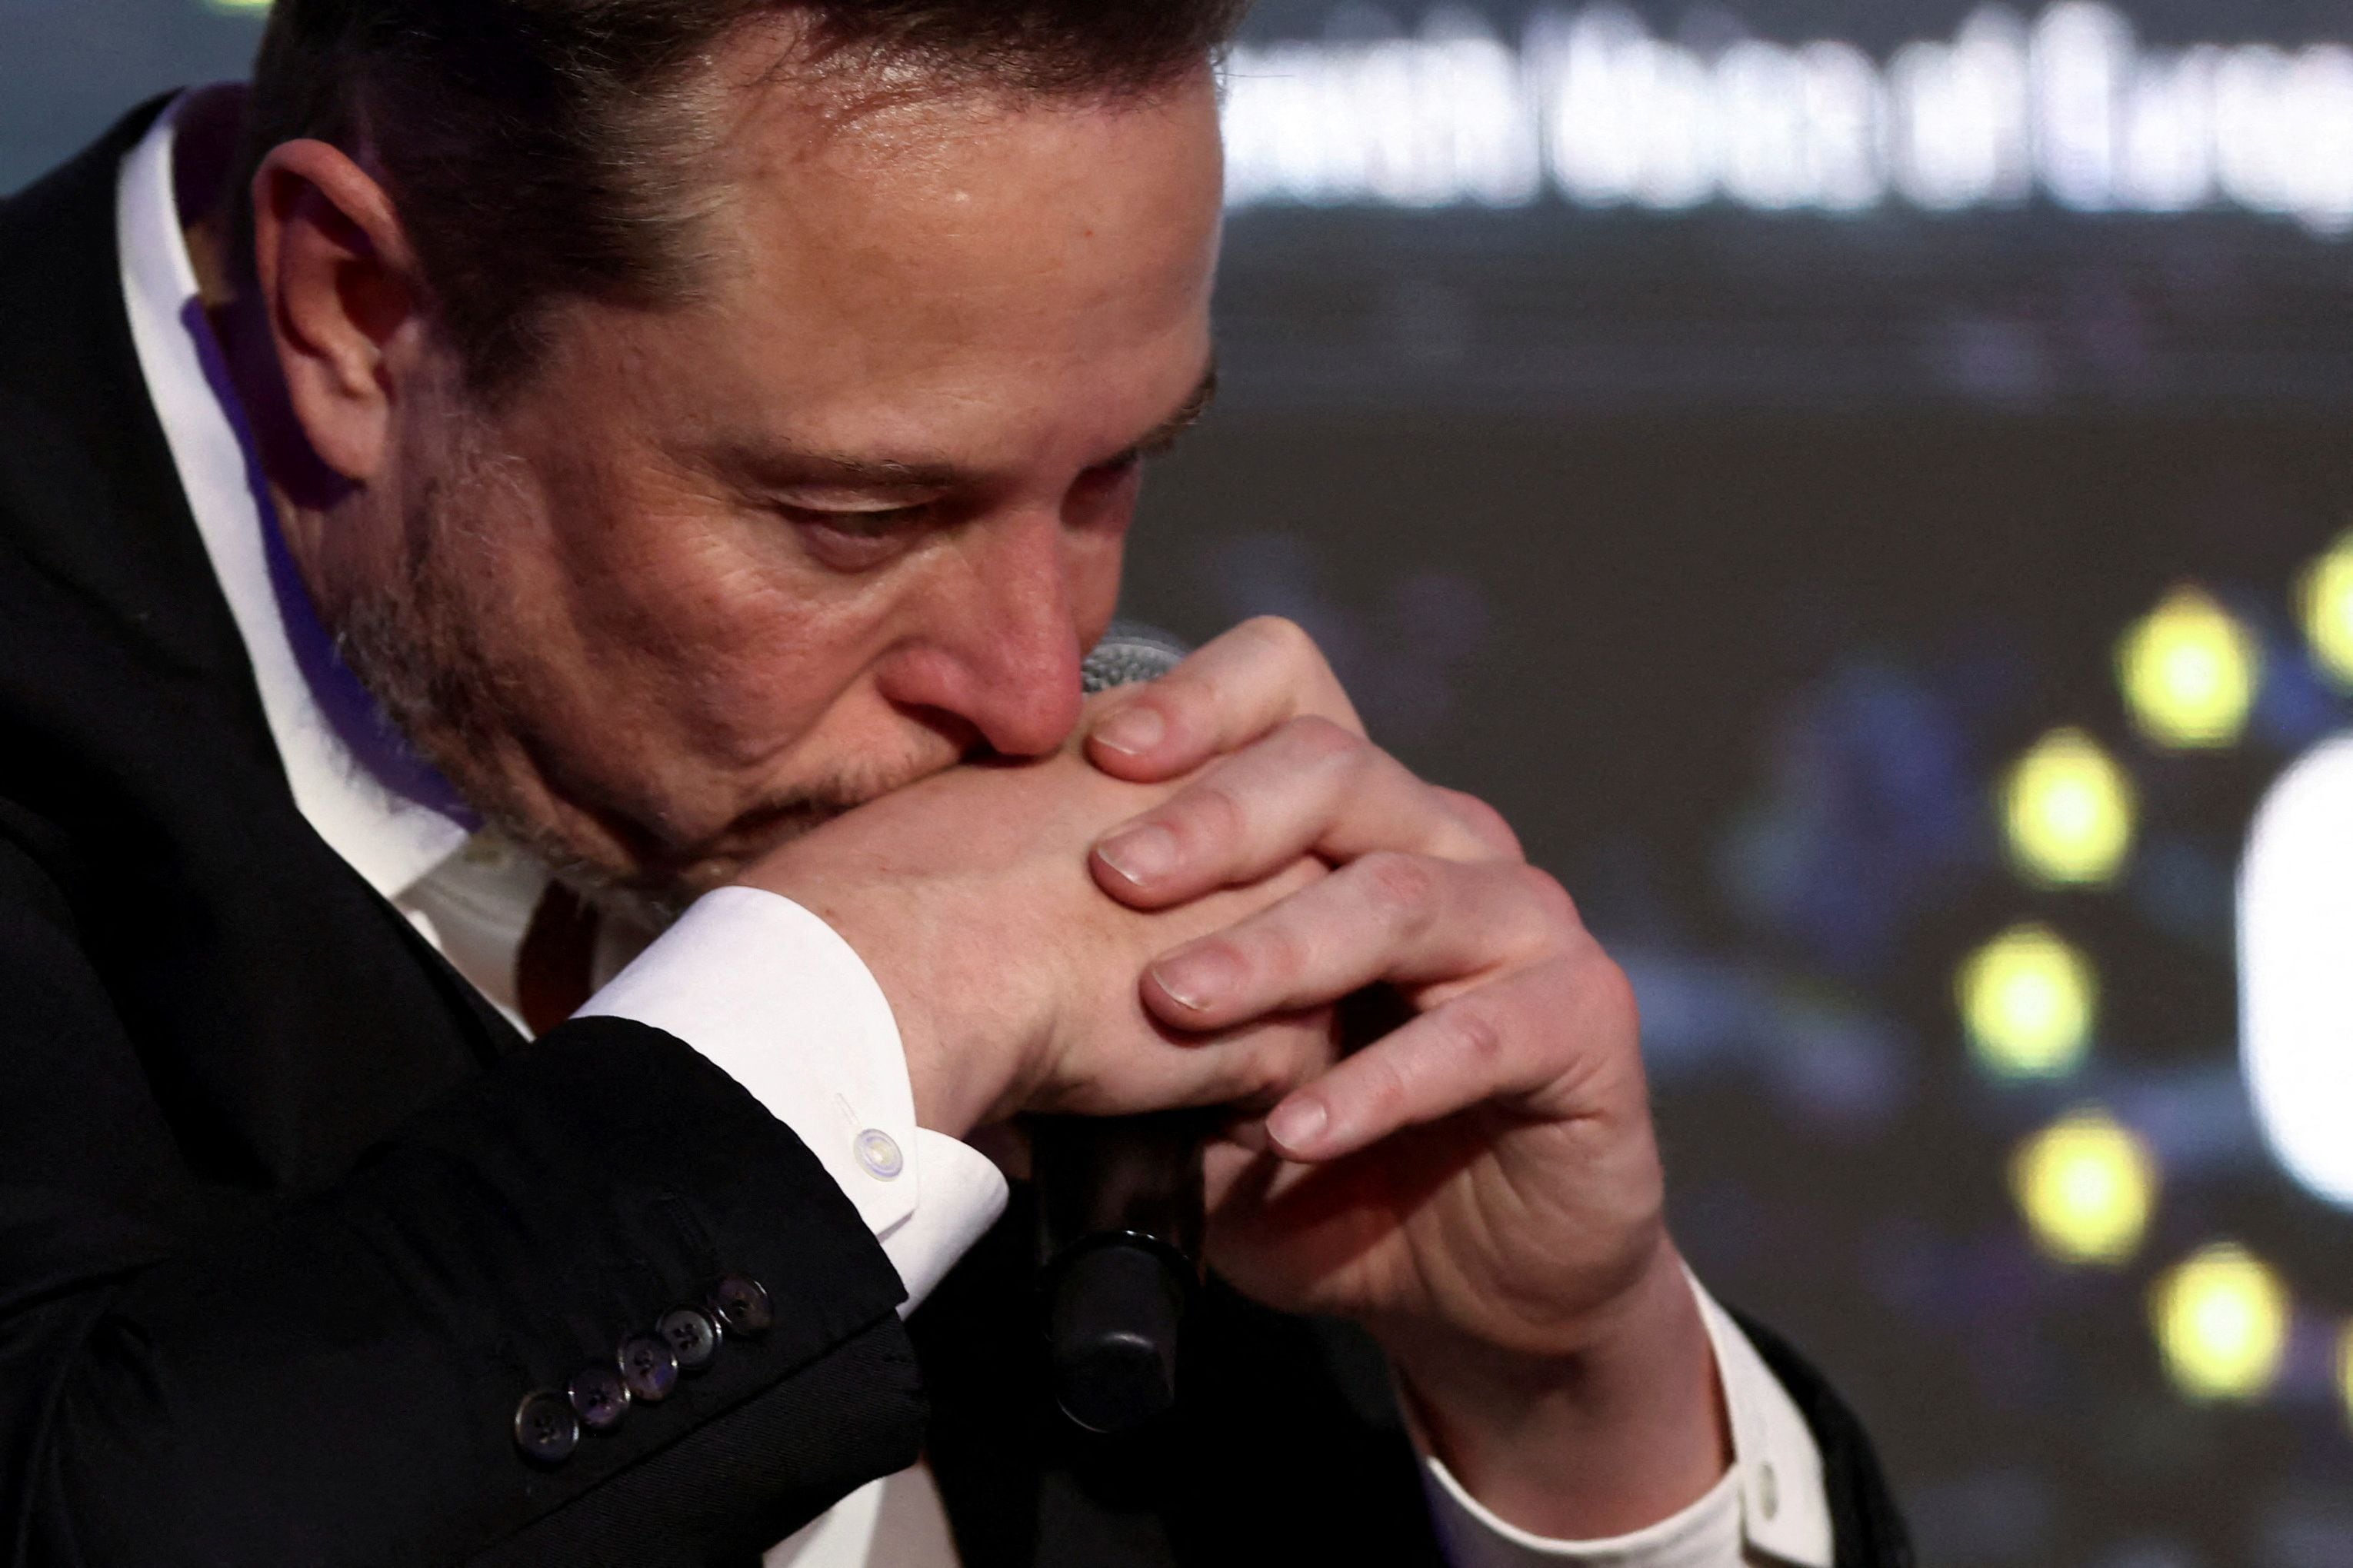  Musk enfrenta un reto significativo debido a una reciente decisión judicial en Delaware, Estados Unidos. (Reuters/Lukasz Glowala)